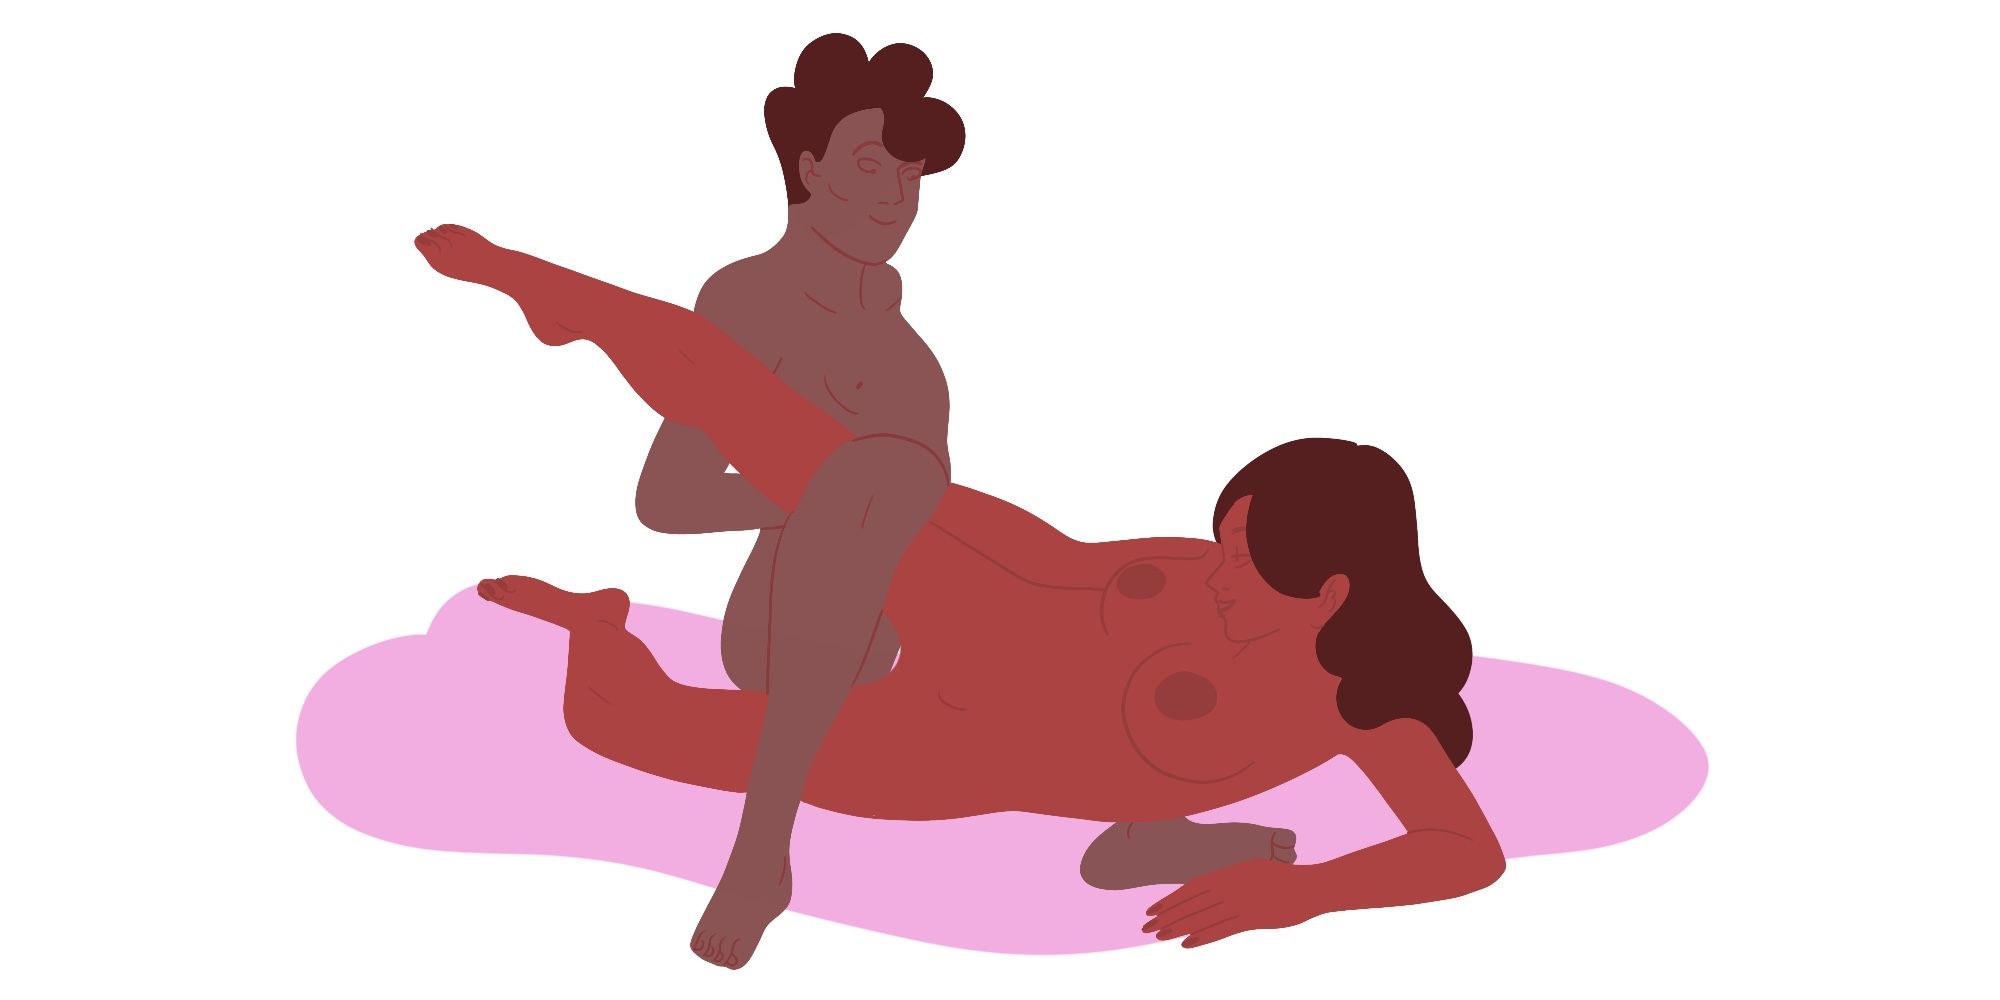 Pretzel Dip Sex Position - How to Do the Pretzel Dip Sex Position